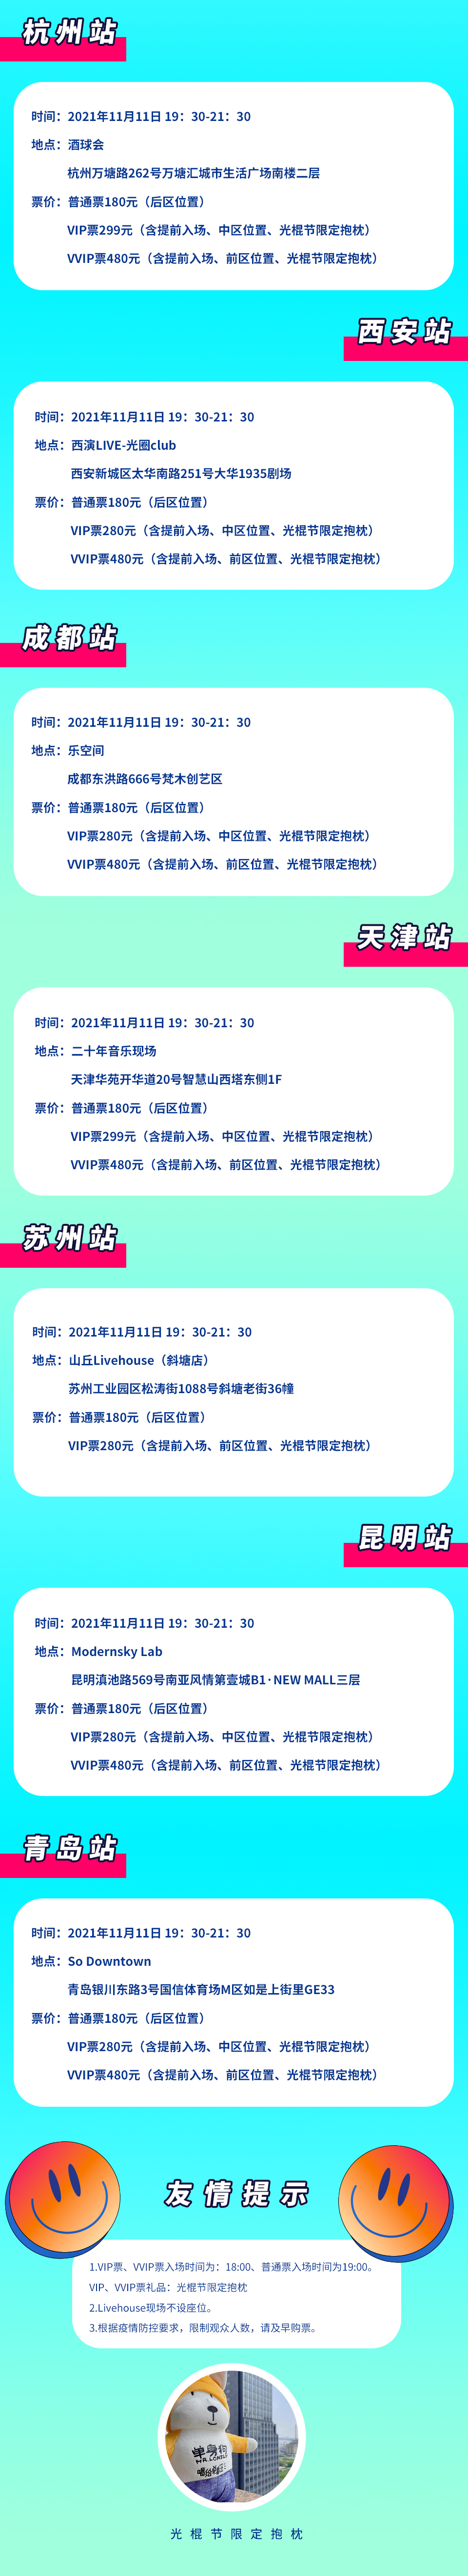 2021光棍节“唱给单身汪”演唱会-贵族狂欢不孤单-南京站